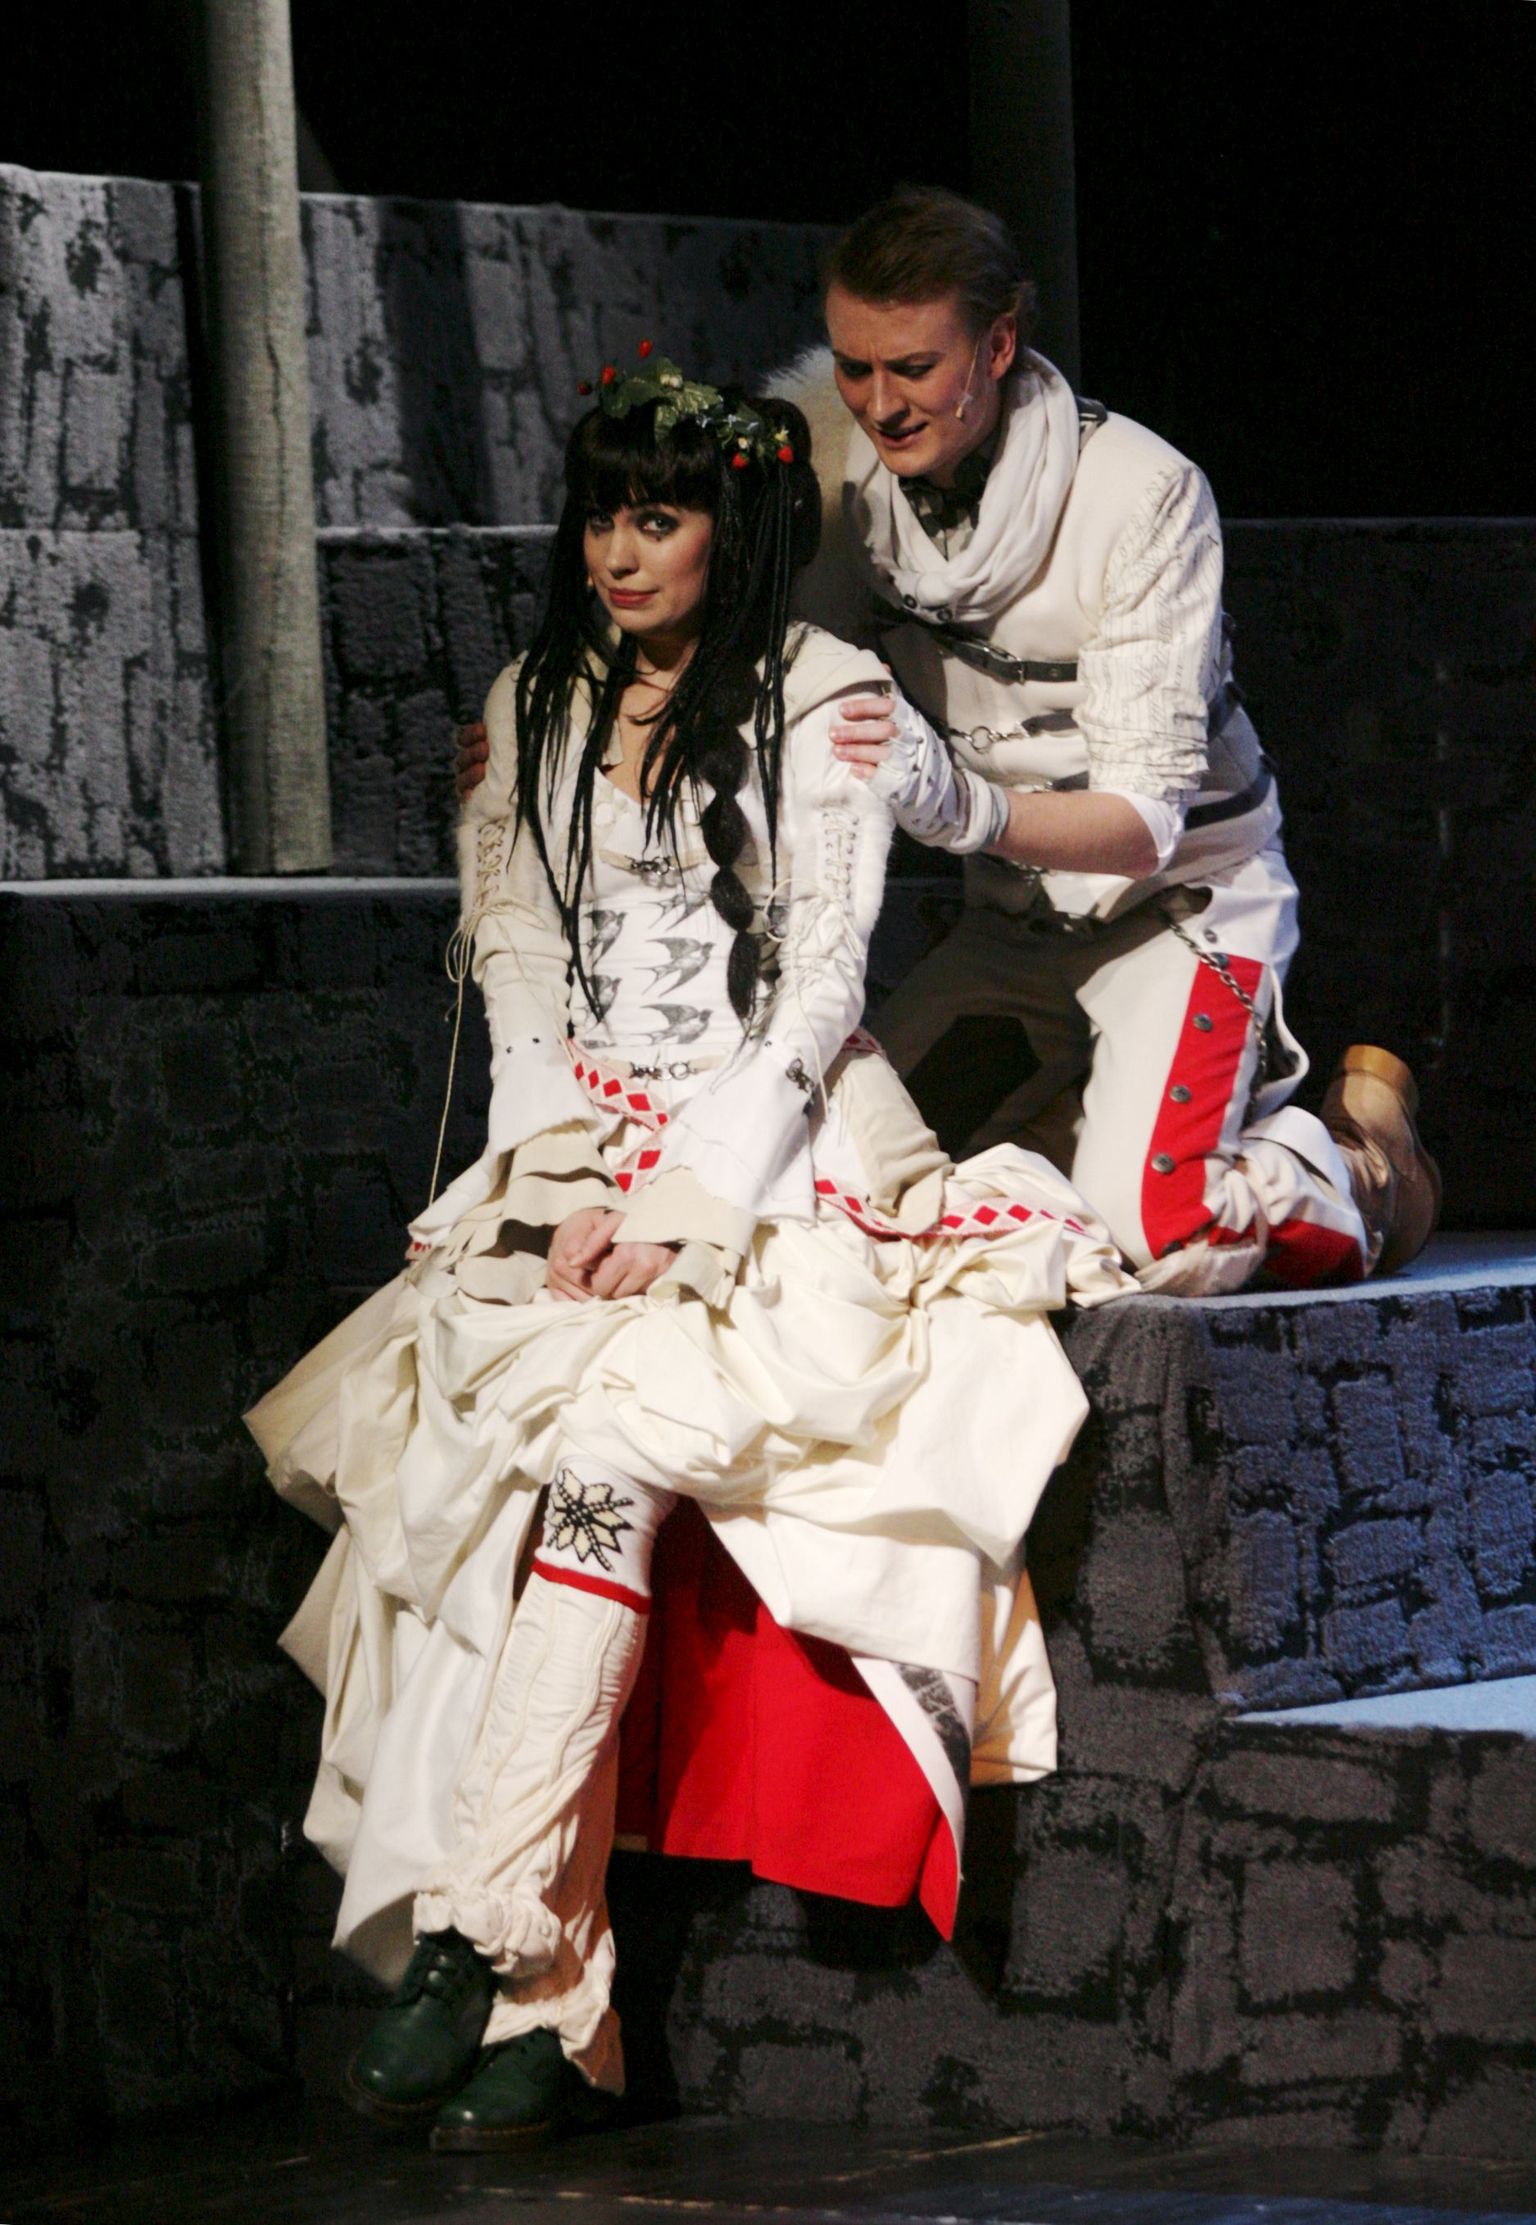 NUKU teatri "Libahundi" etendus 2011 aastal